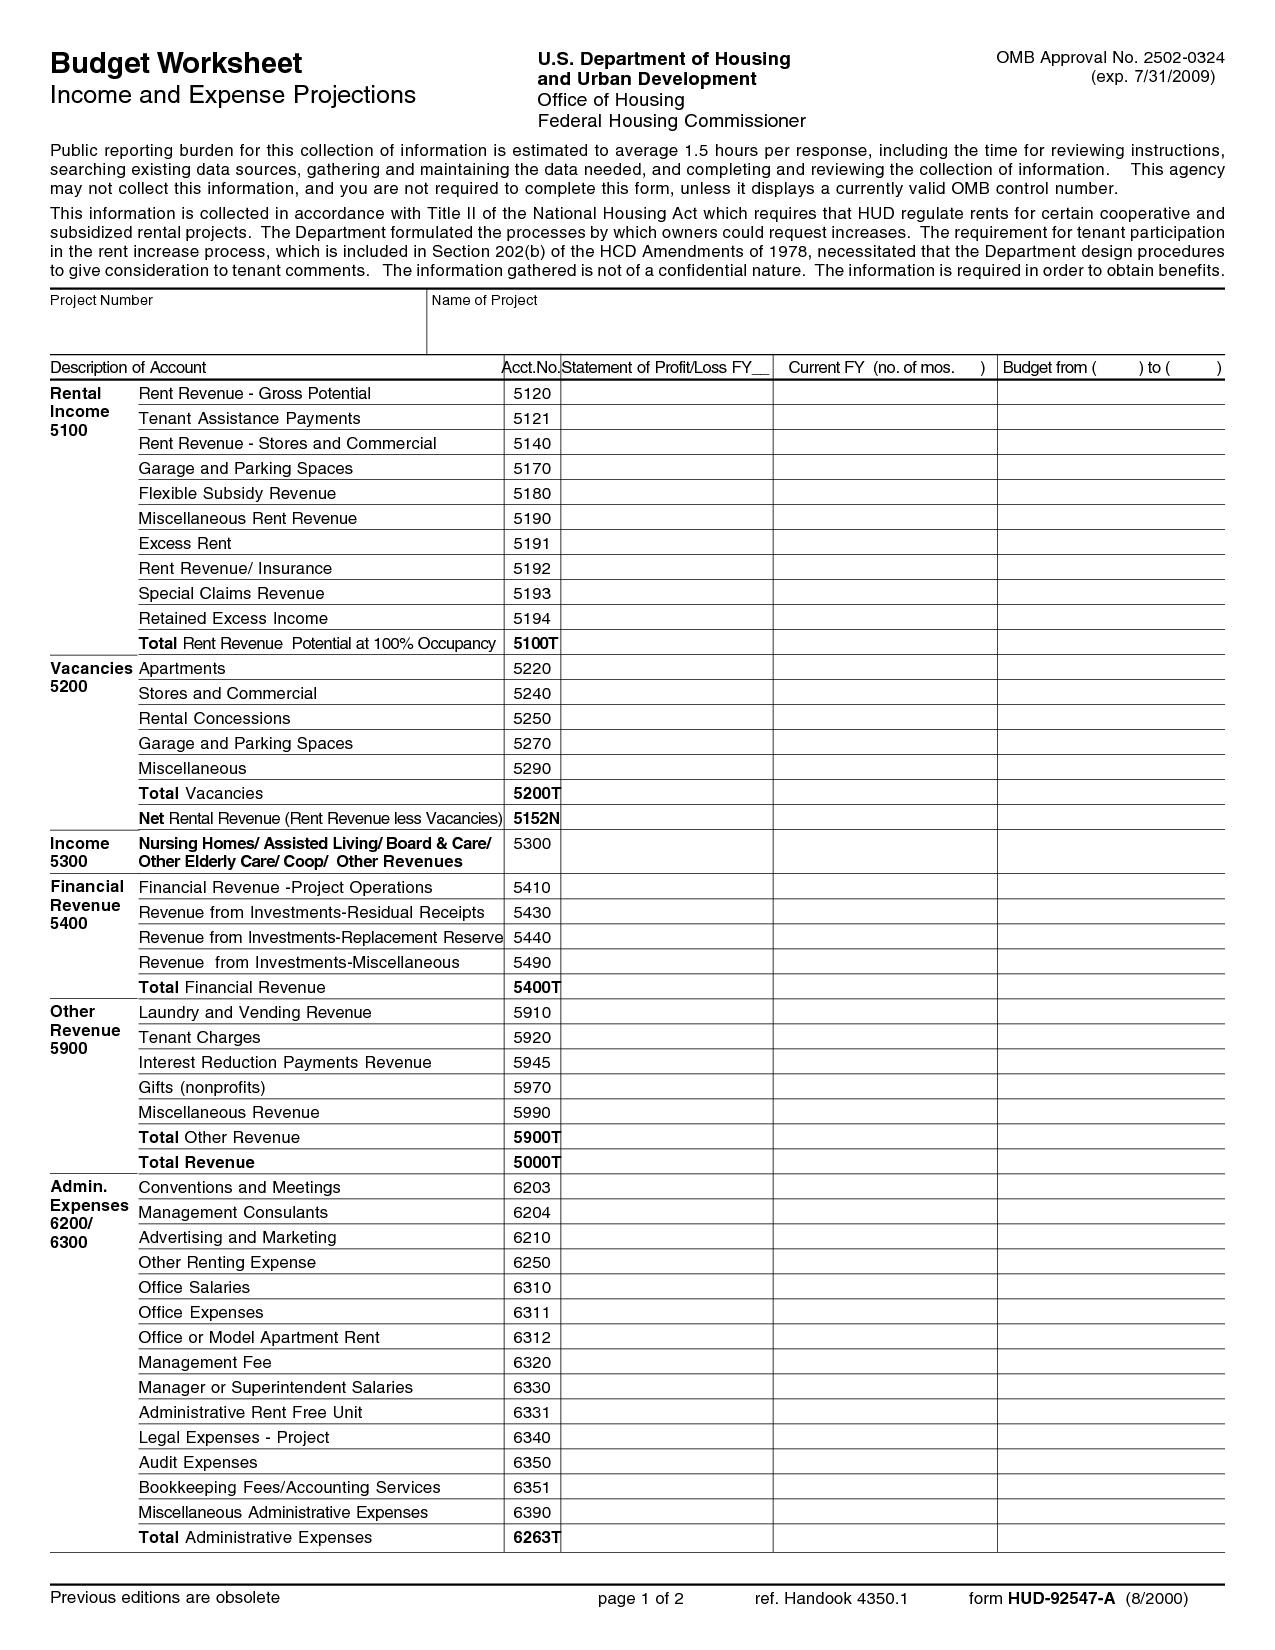 19 Best Images Of Food Budget Planner Worksheet Budget Worksheet Printable Free Printable